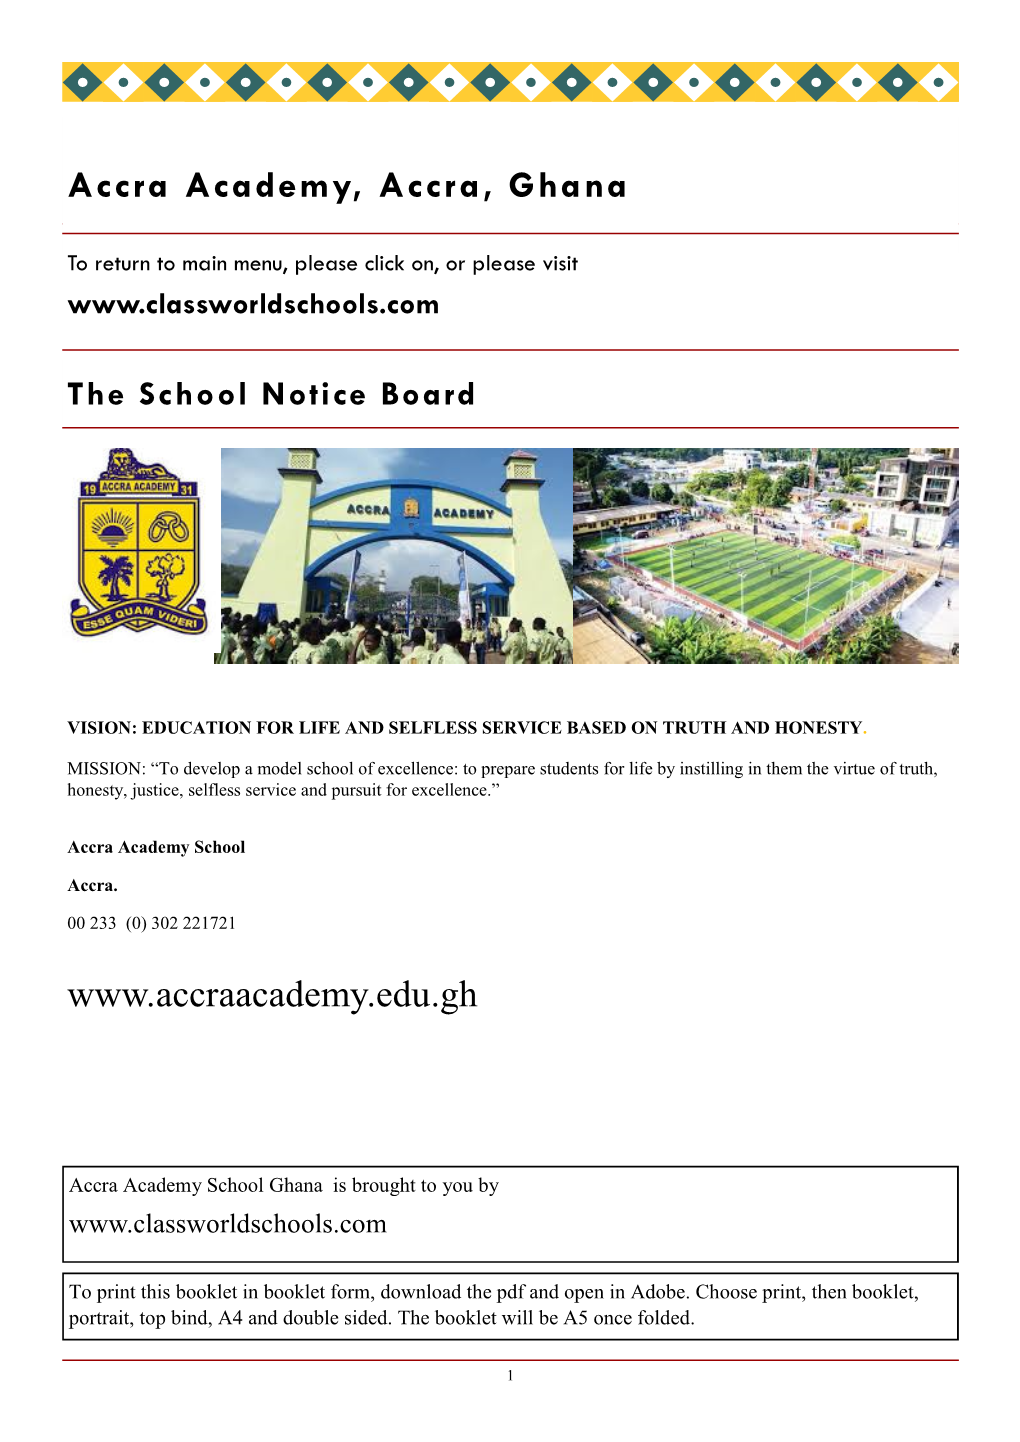 Ghana Accra Academy